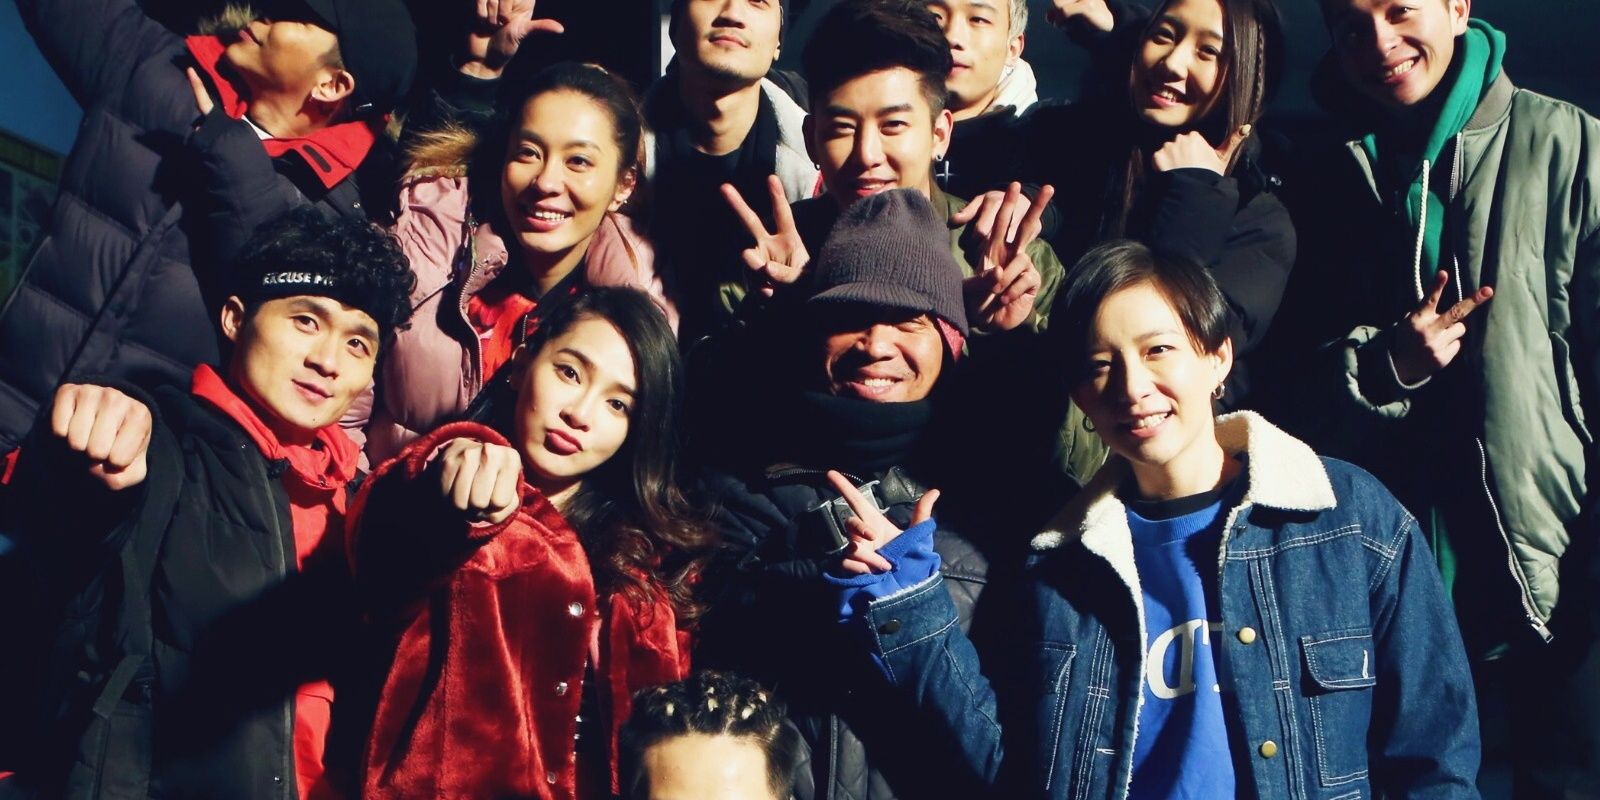 Membros do elenco de Step Up China posando juntos Cropped